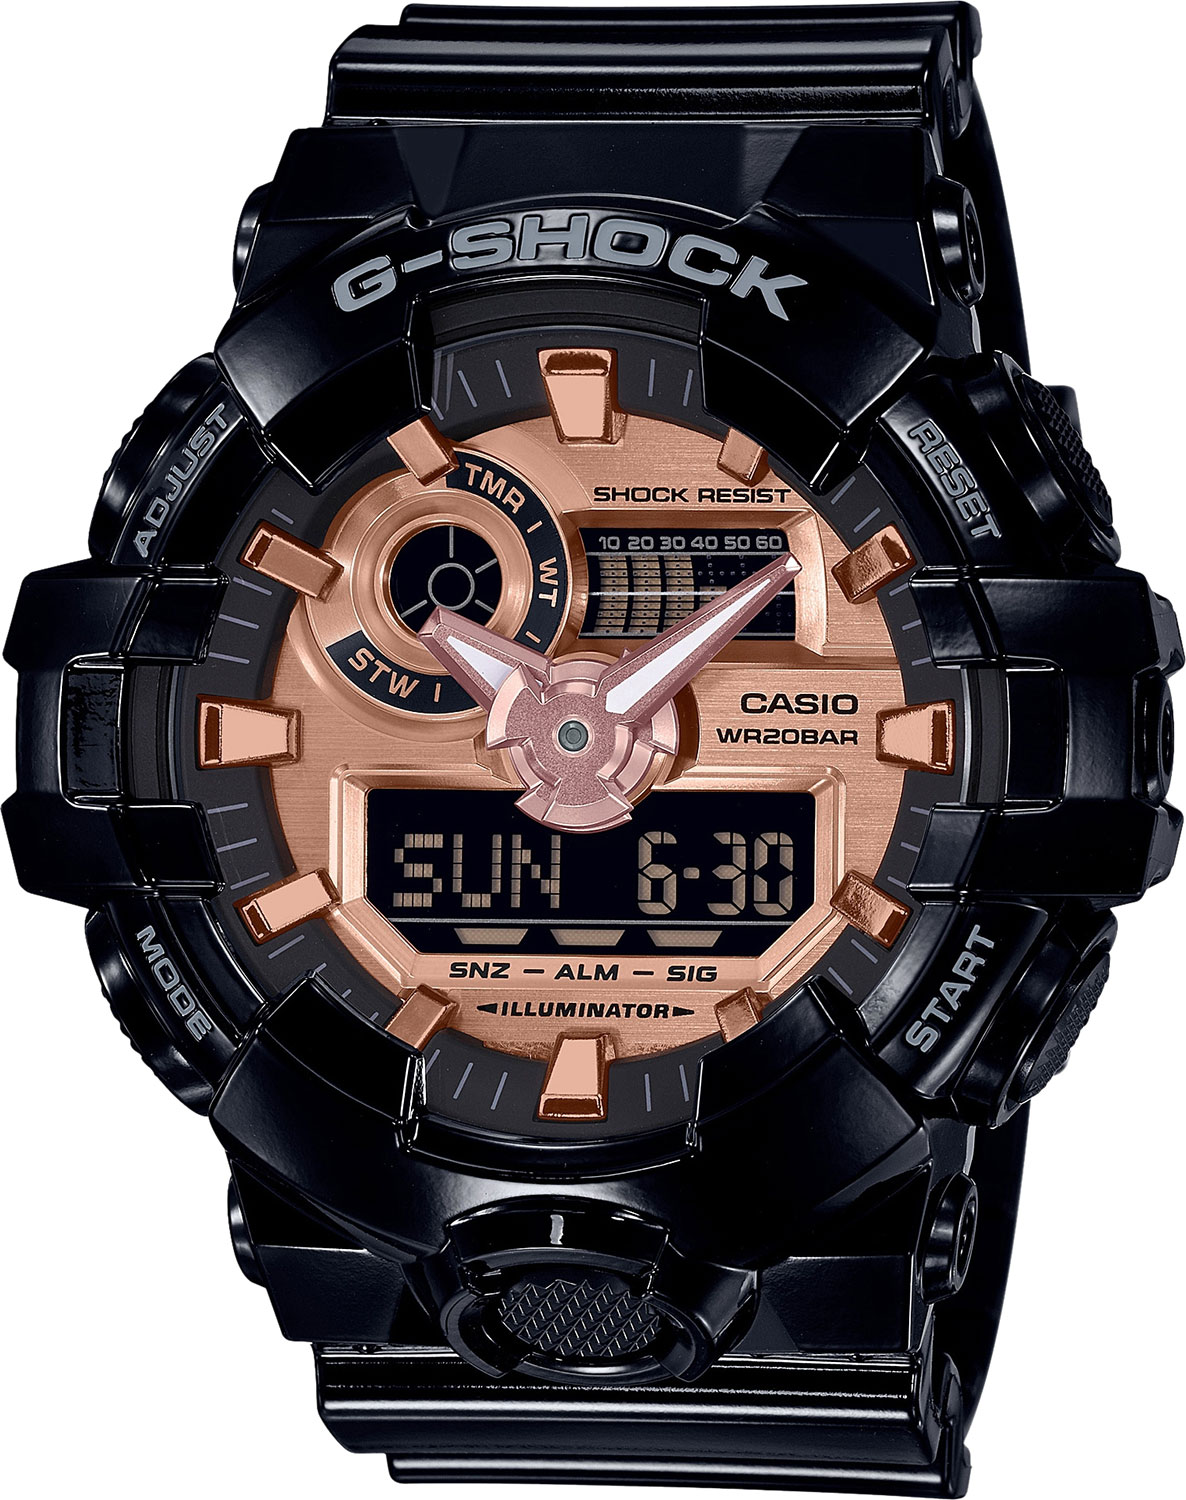 Японские наручные часы Casio G-SHOCK GA-700MMC-1AER с хронографом